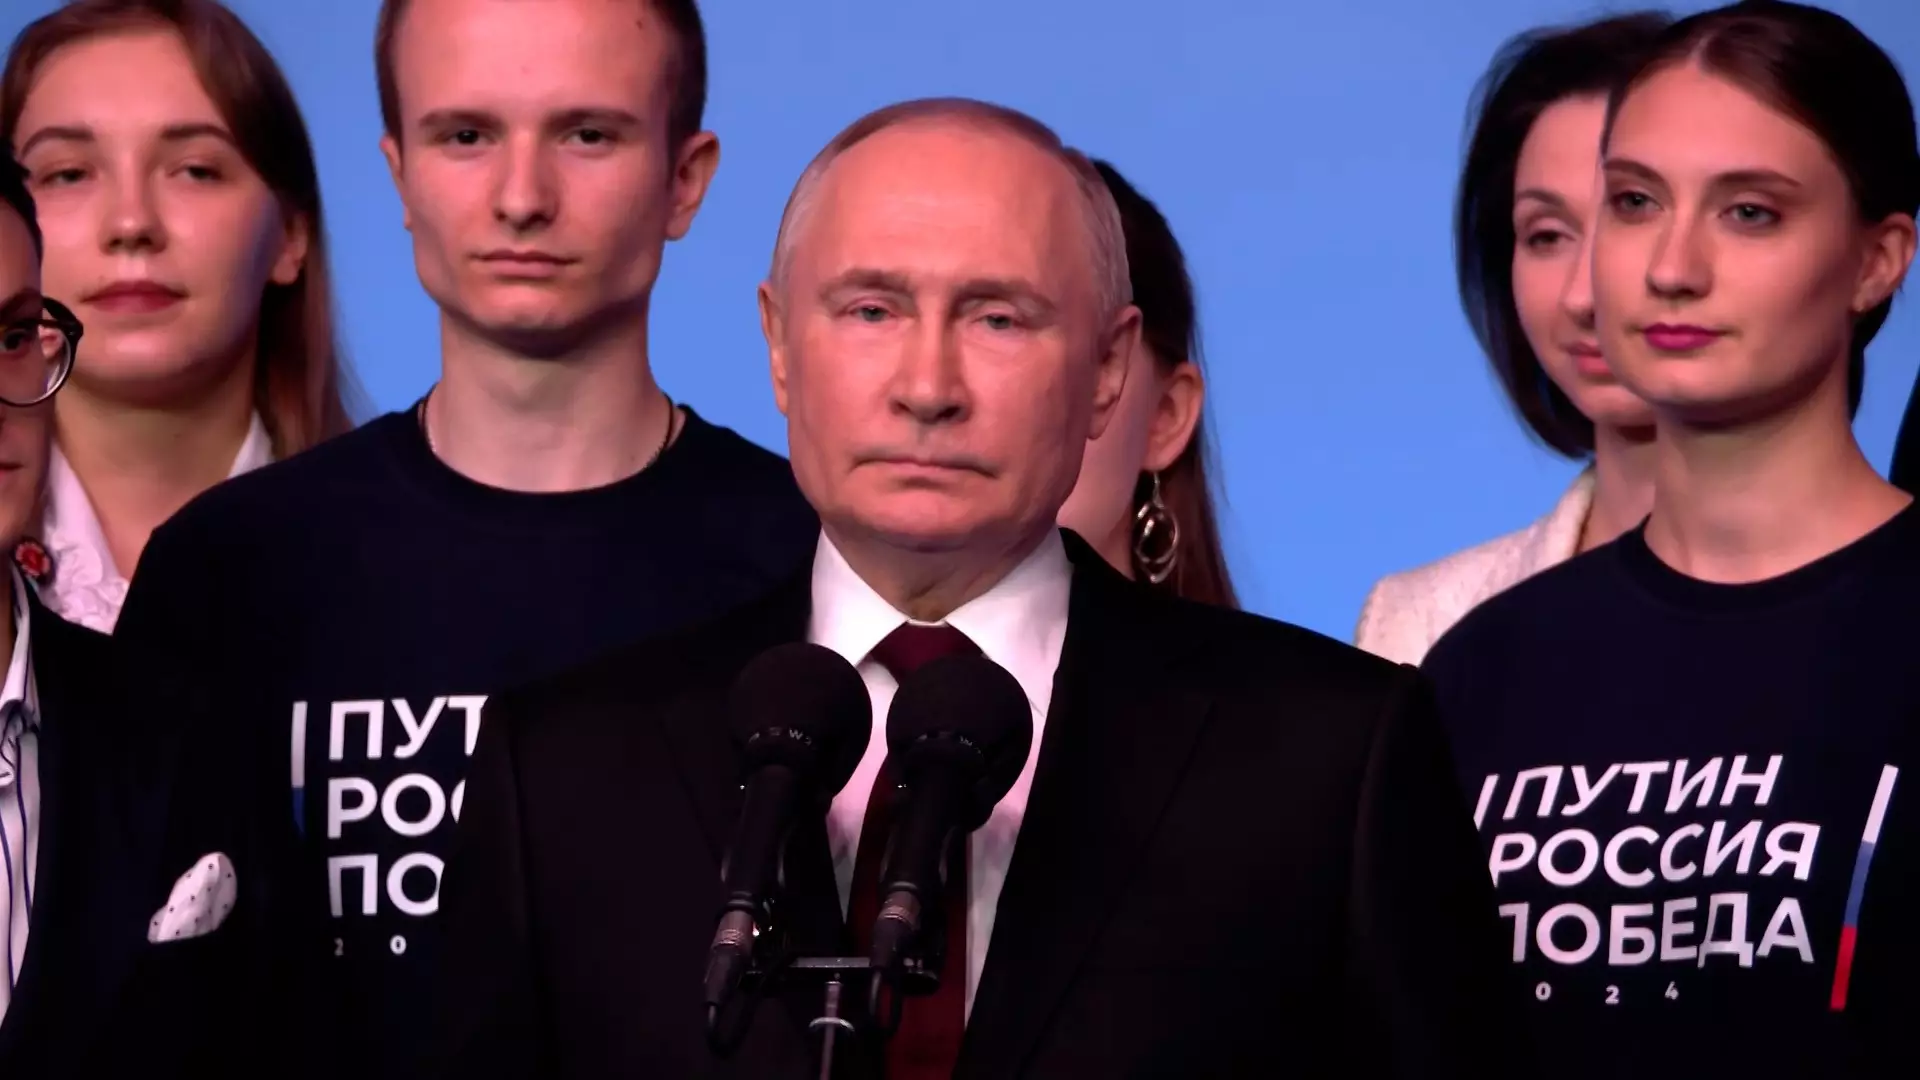 Владимир Путин набрал 87,29% голосов на выборах президента России по итогам подсчета 99,75% протоколов УИК